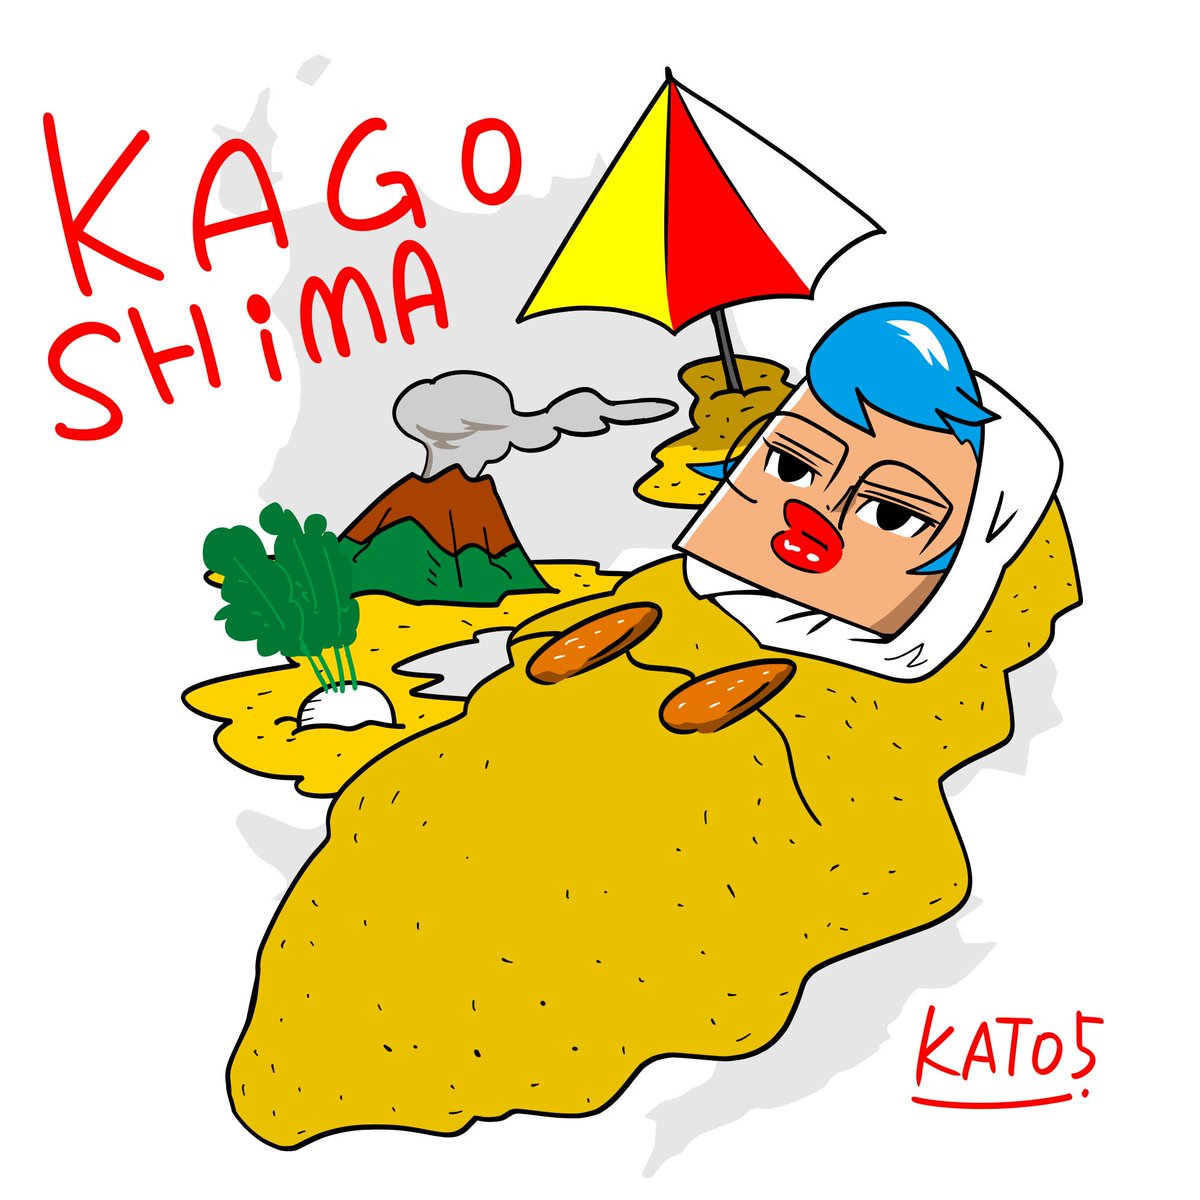 加藤豪 Twitterren 鹿児島ガール 浅い知識で描くシリーズ 砂風呂で有名な指宿温泉がポップですね 桜島大根もポップですね でも1番ポップなのはさつま揚げブラです Kagoshima Prefecture Is Famous For Sand Steamed Hot Spring Kato5 Go イラスト ガール 桜島